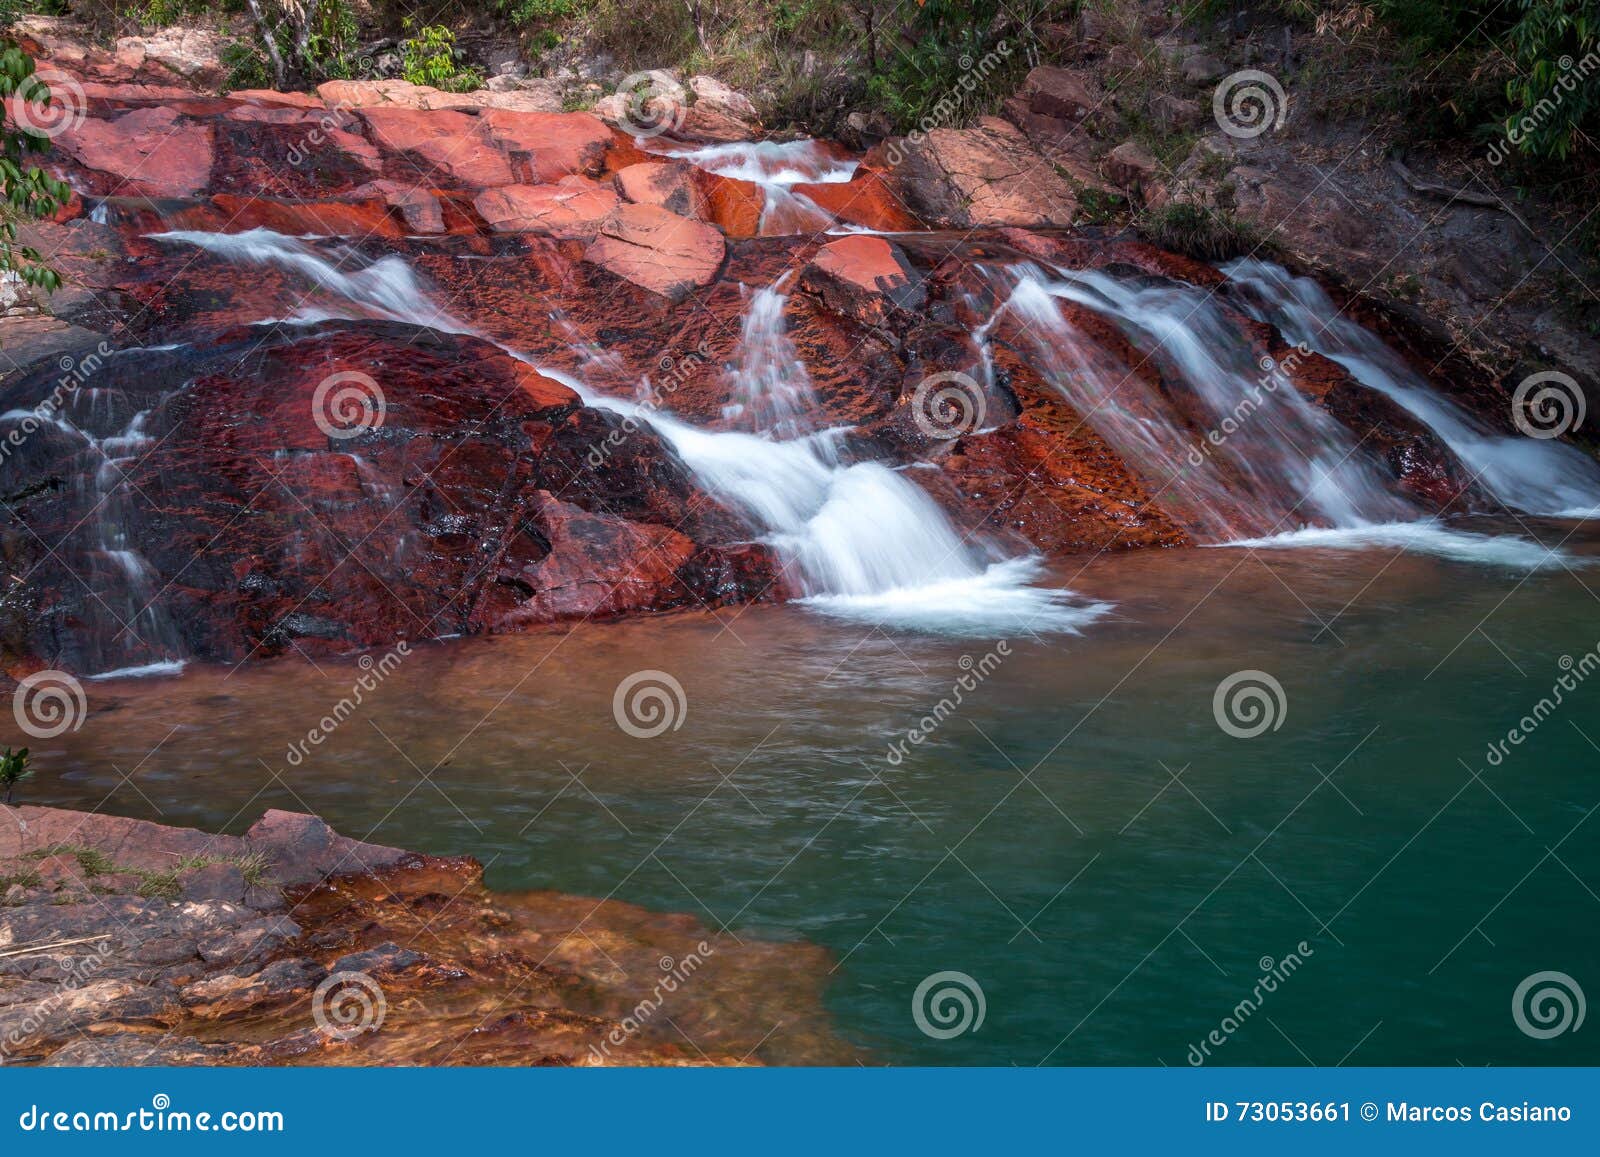 Waterval die over Rotsen stroomt. Waterval binnen Brazilië wordt gevestigd die onderaan Rotsen in een Blauwe Pool van Water stromen dat